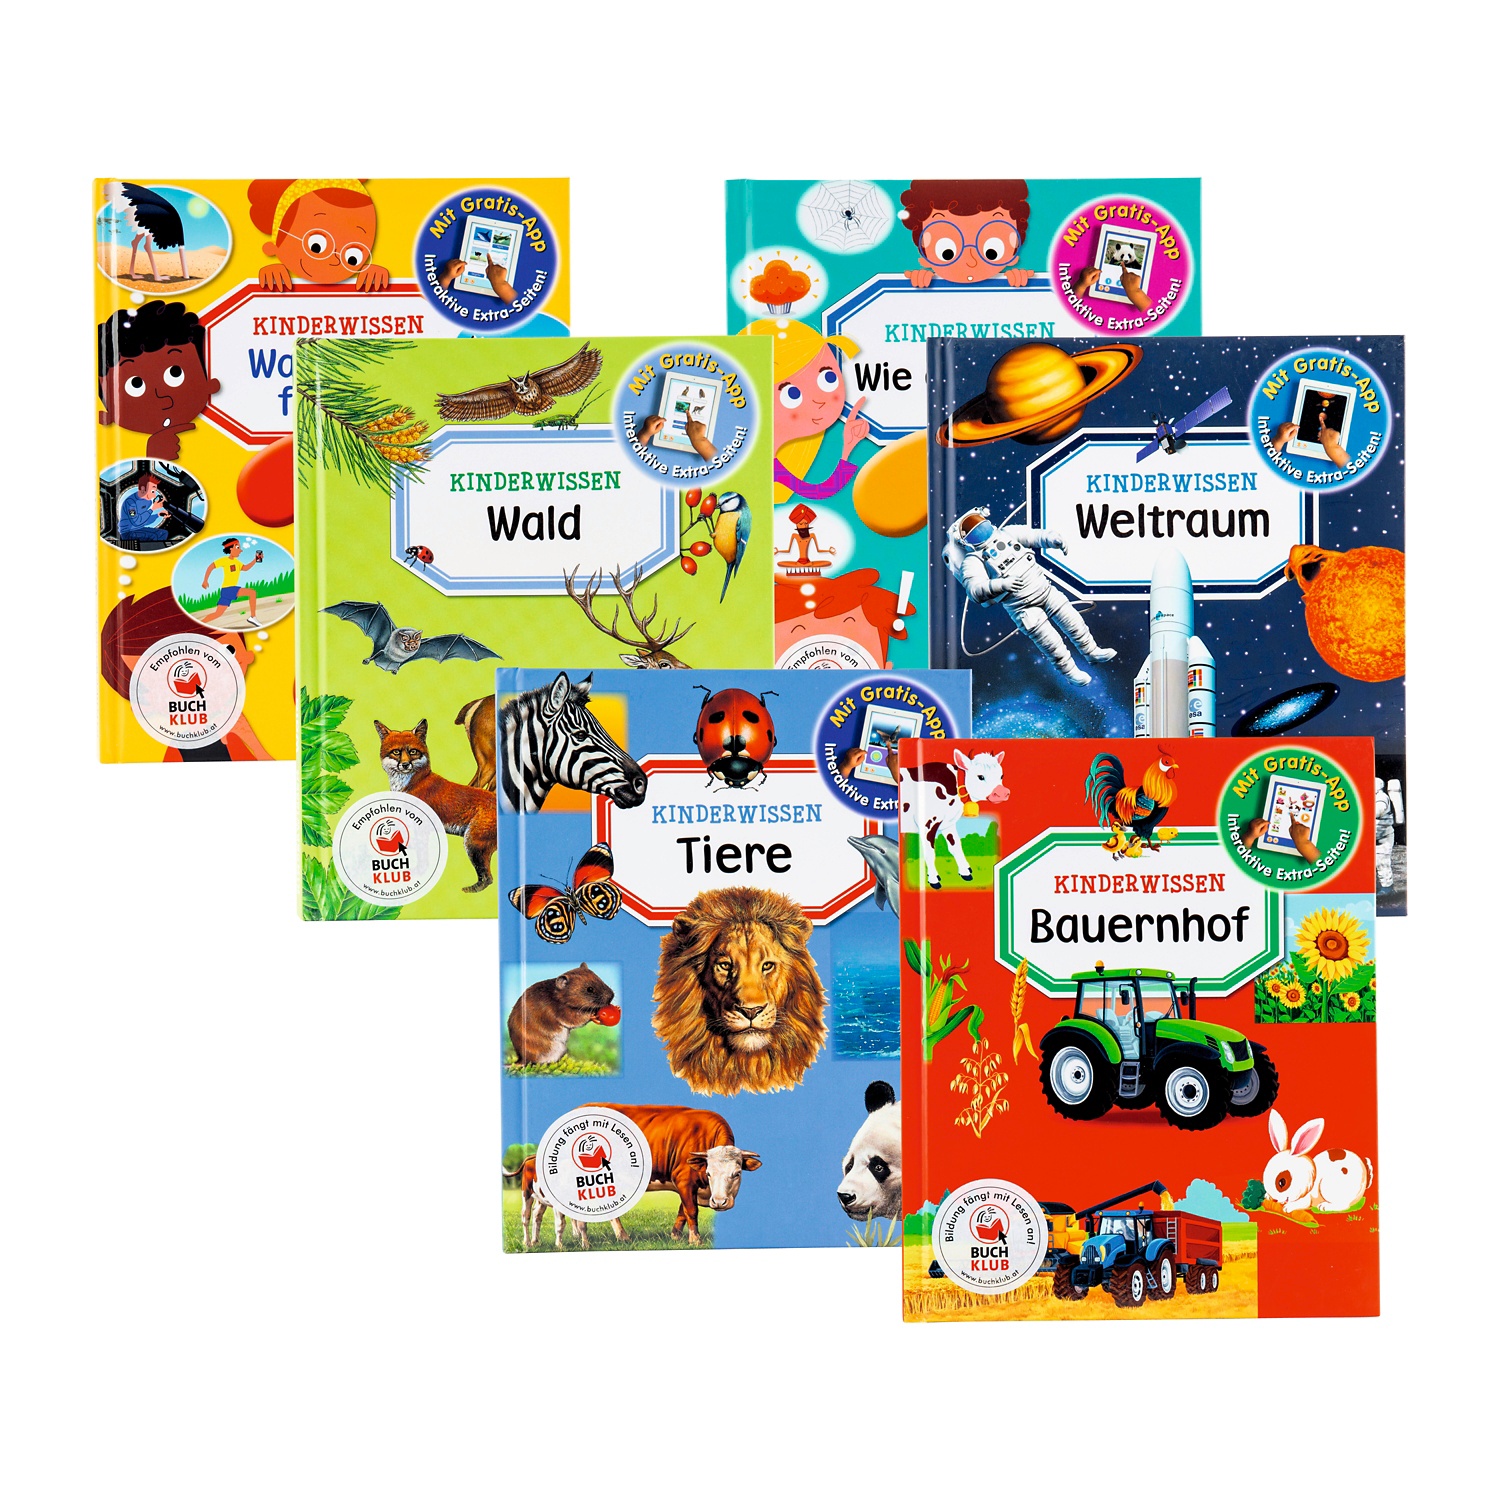 Wissensbuch für Kinder mit App